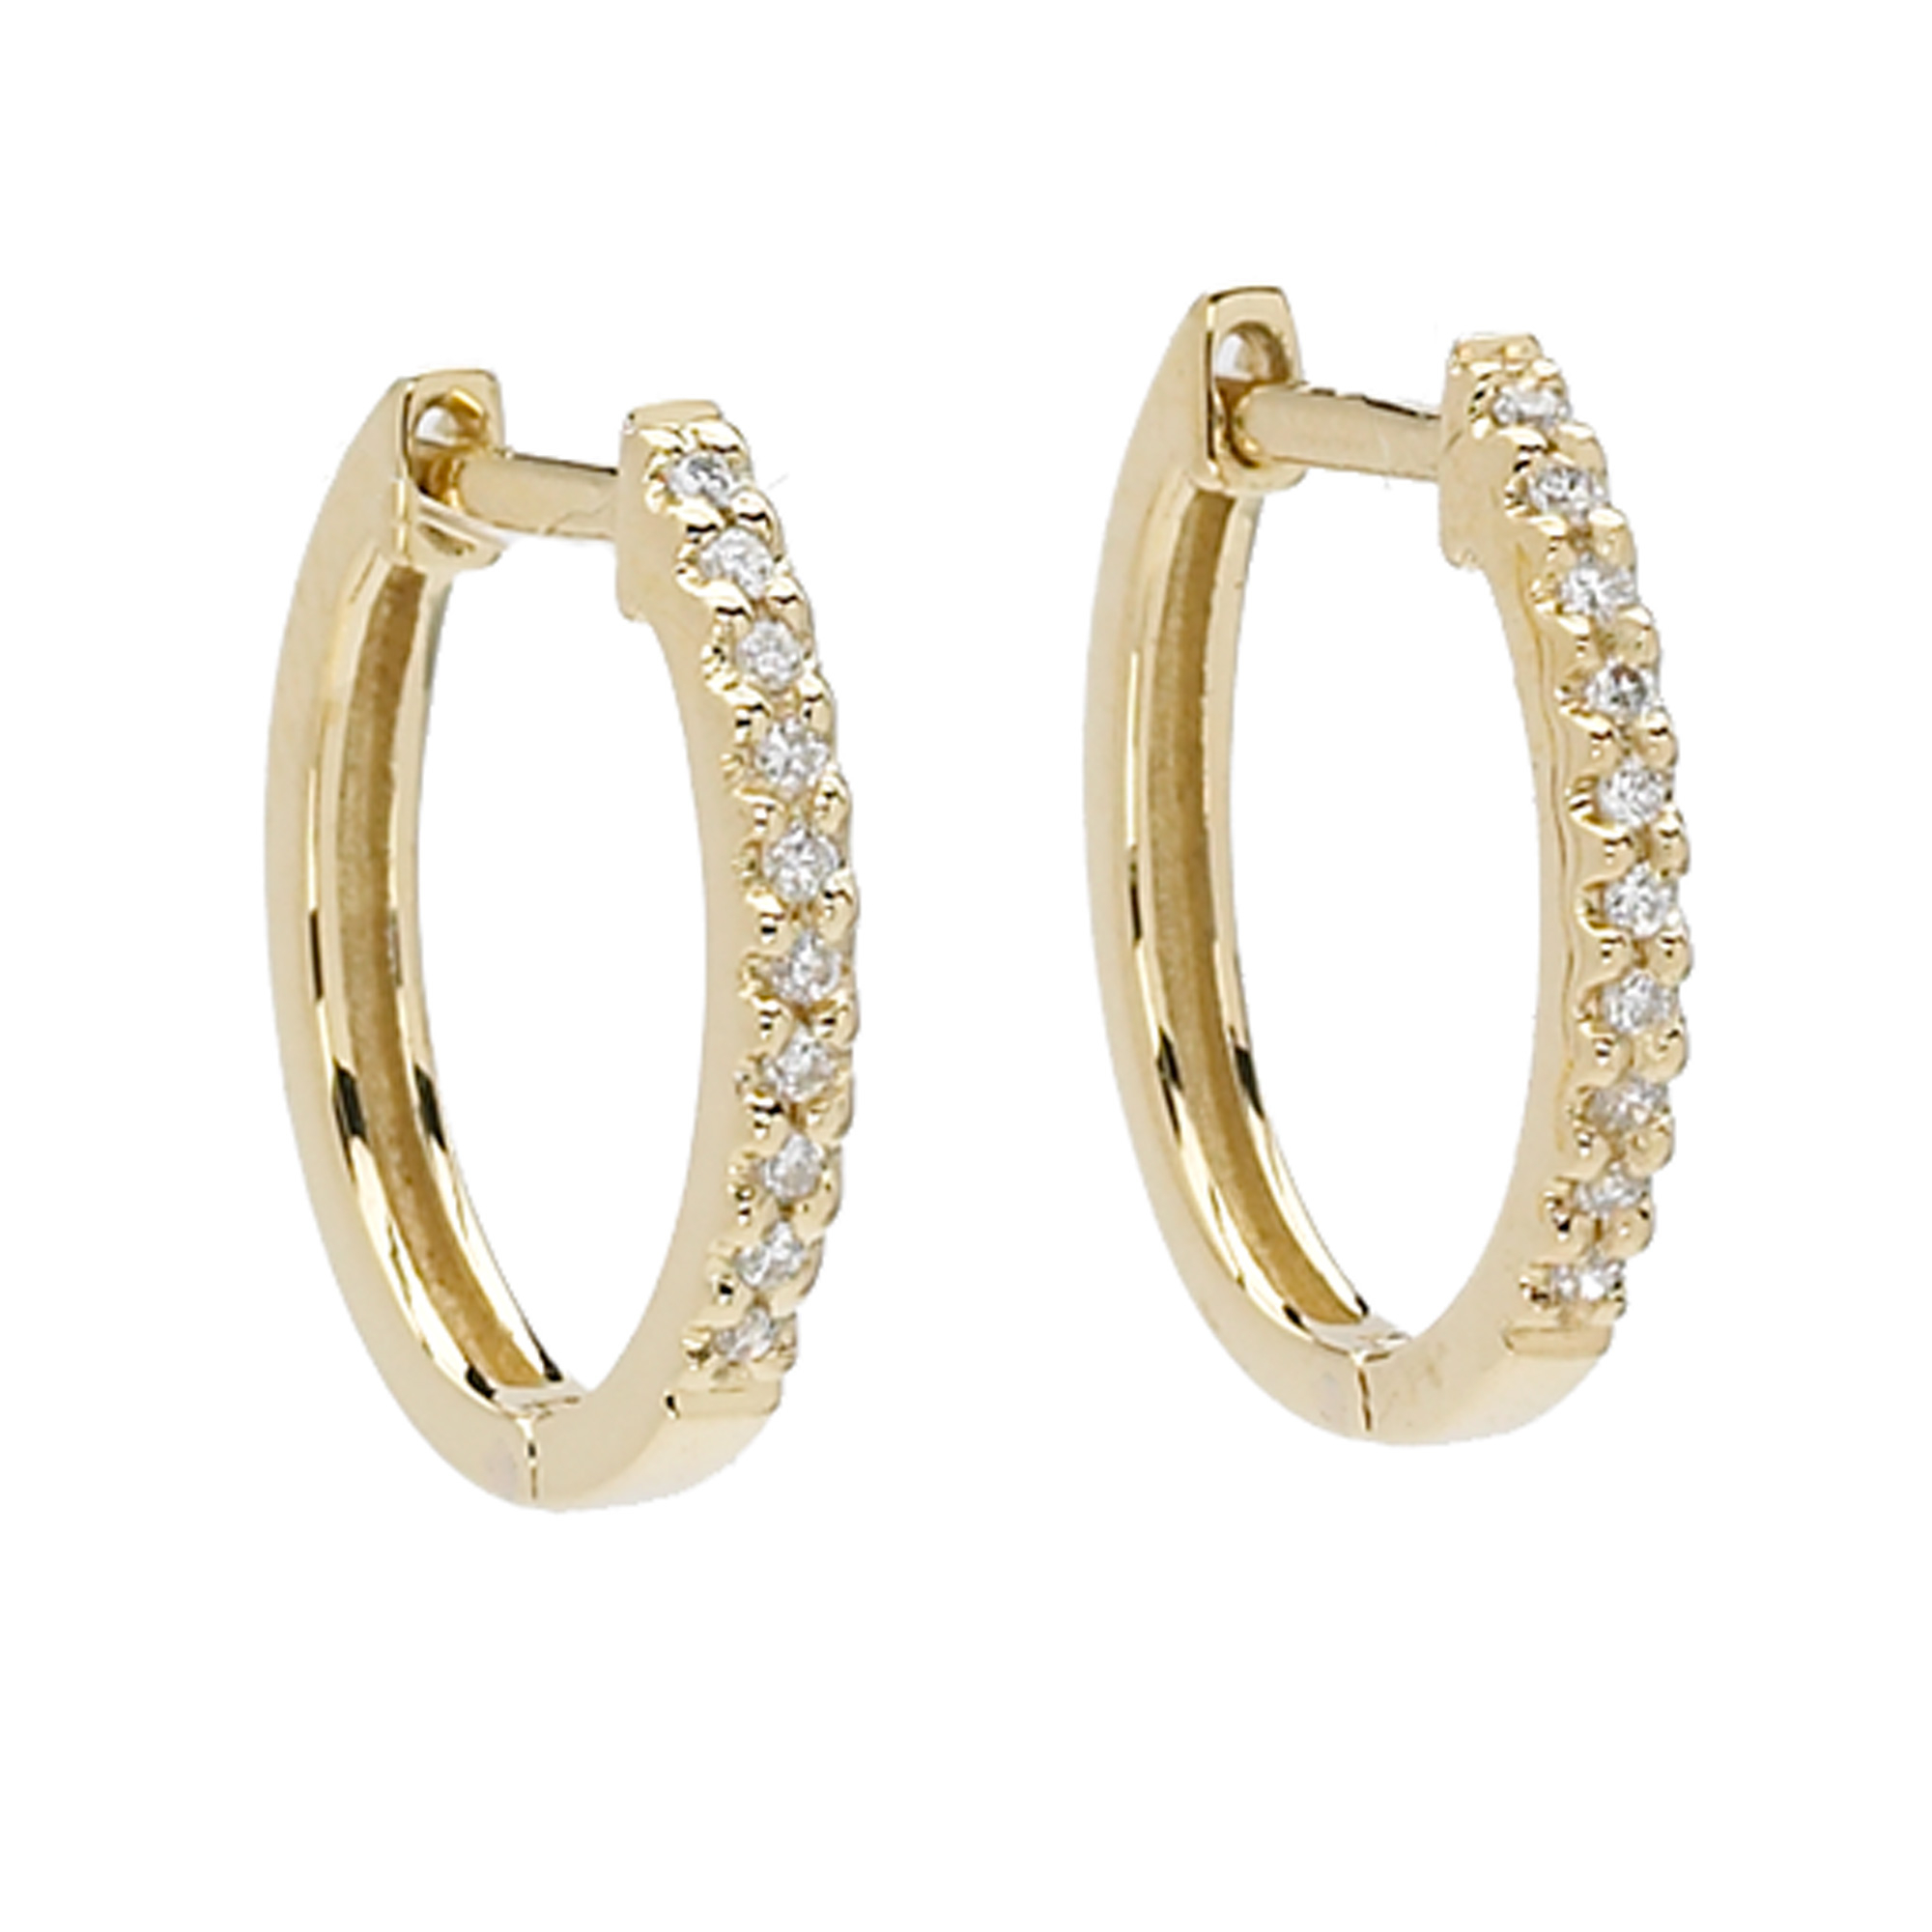 Elizabeth Showers Gold & Diamond Huggie Hoop Earrings | Gump's